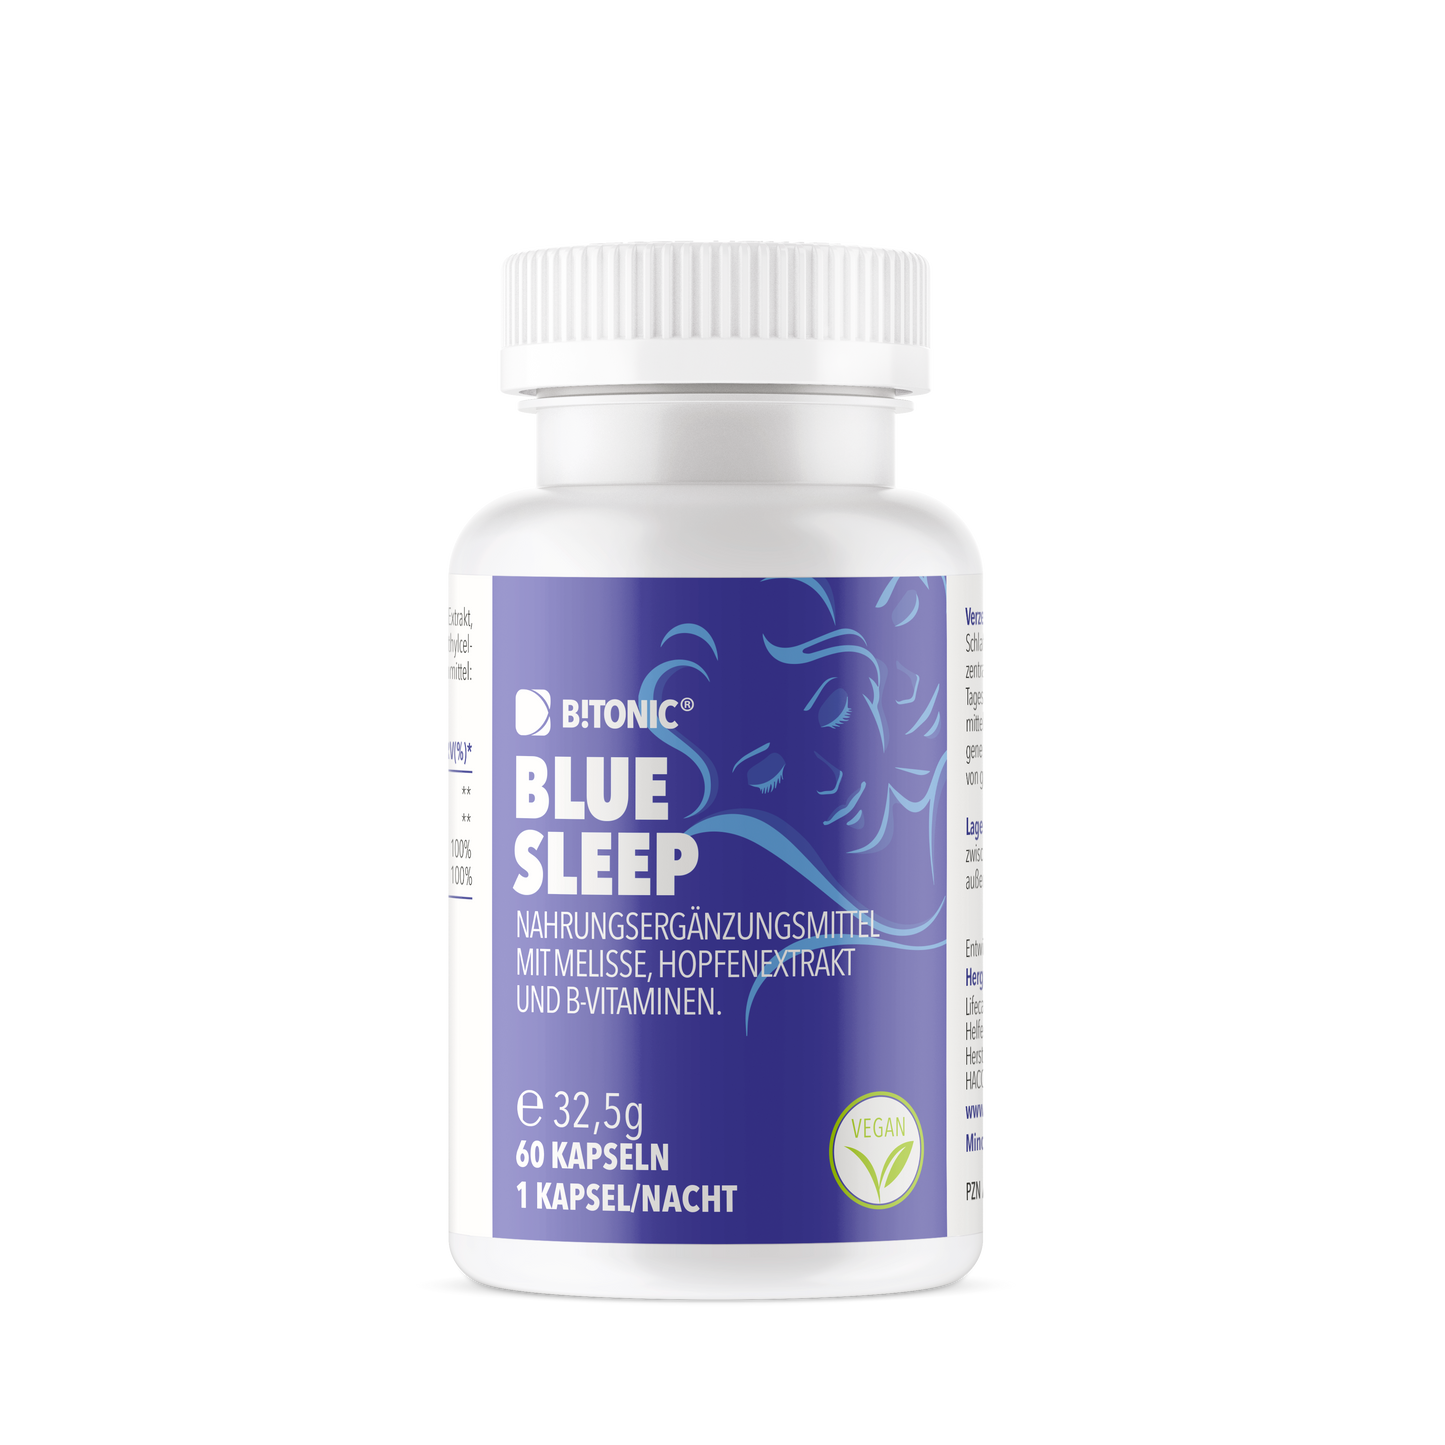 B!TONIC® Blue Sleep - Der natürliche Schlafoptimierer